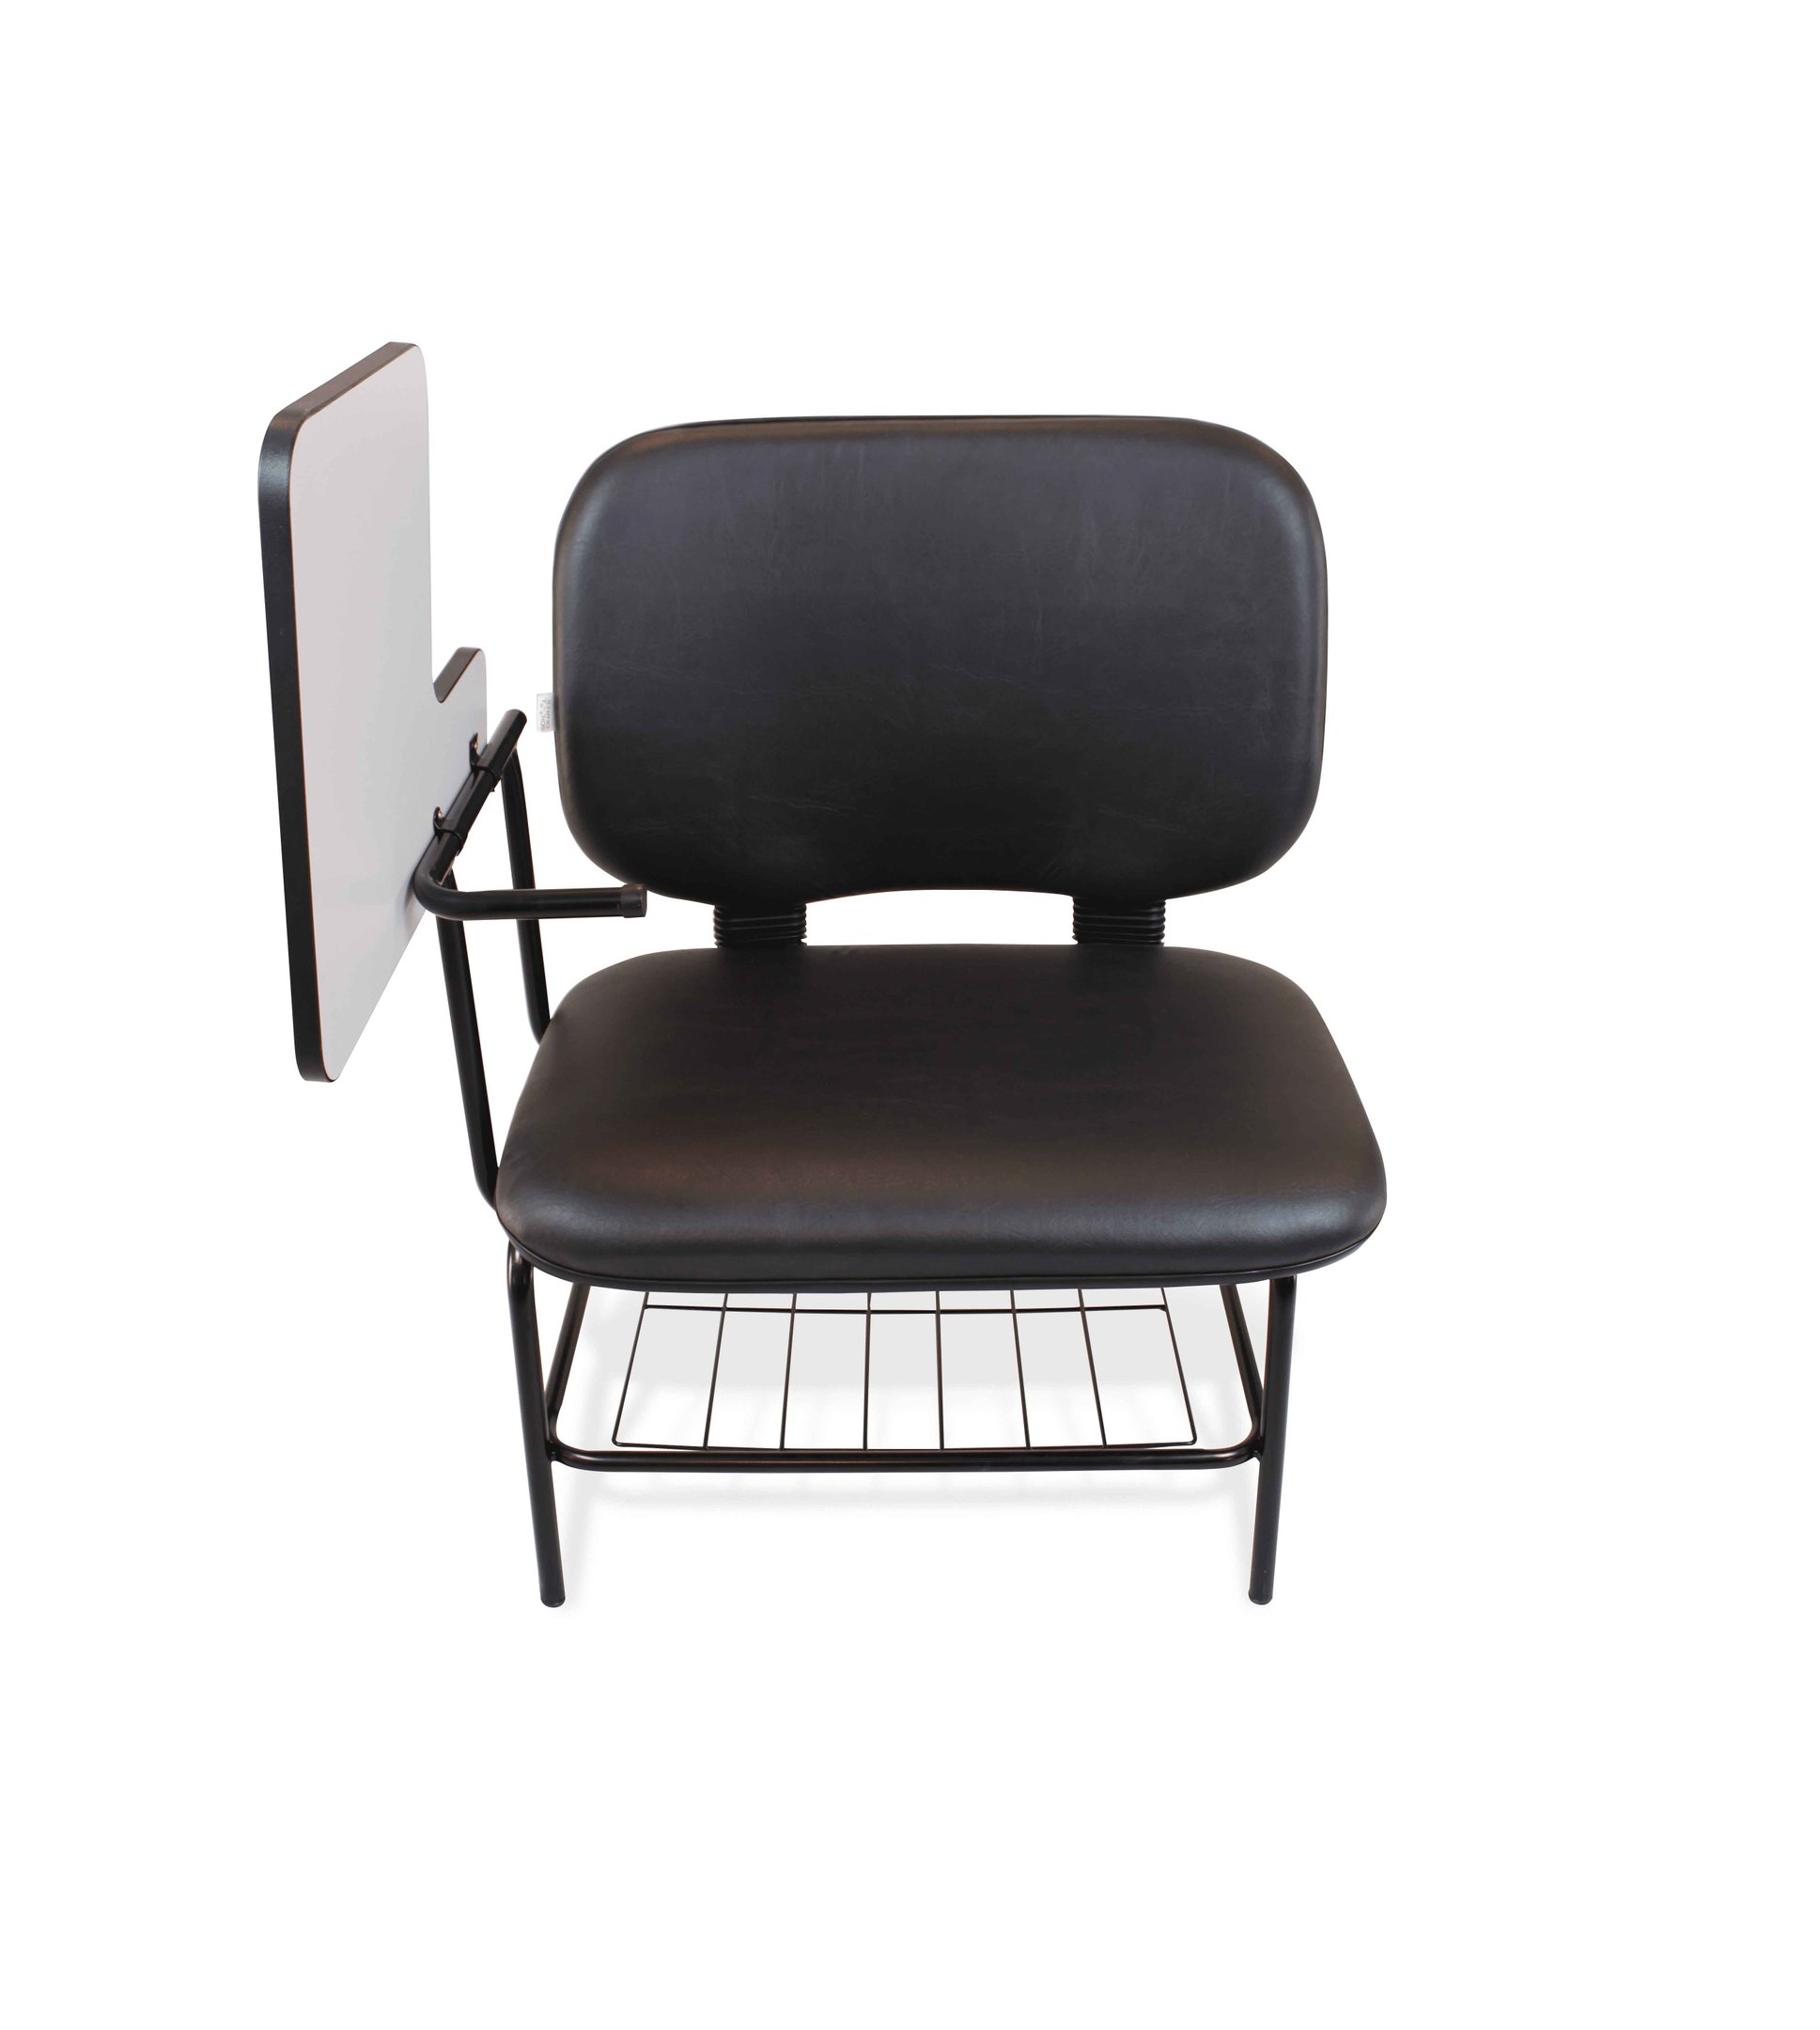 Cadeira Universitária Obeso c/ Prancheta - Suporta até 250 Kg - 2